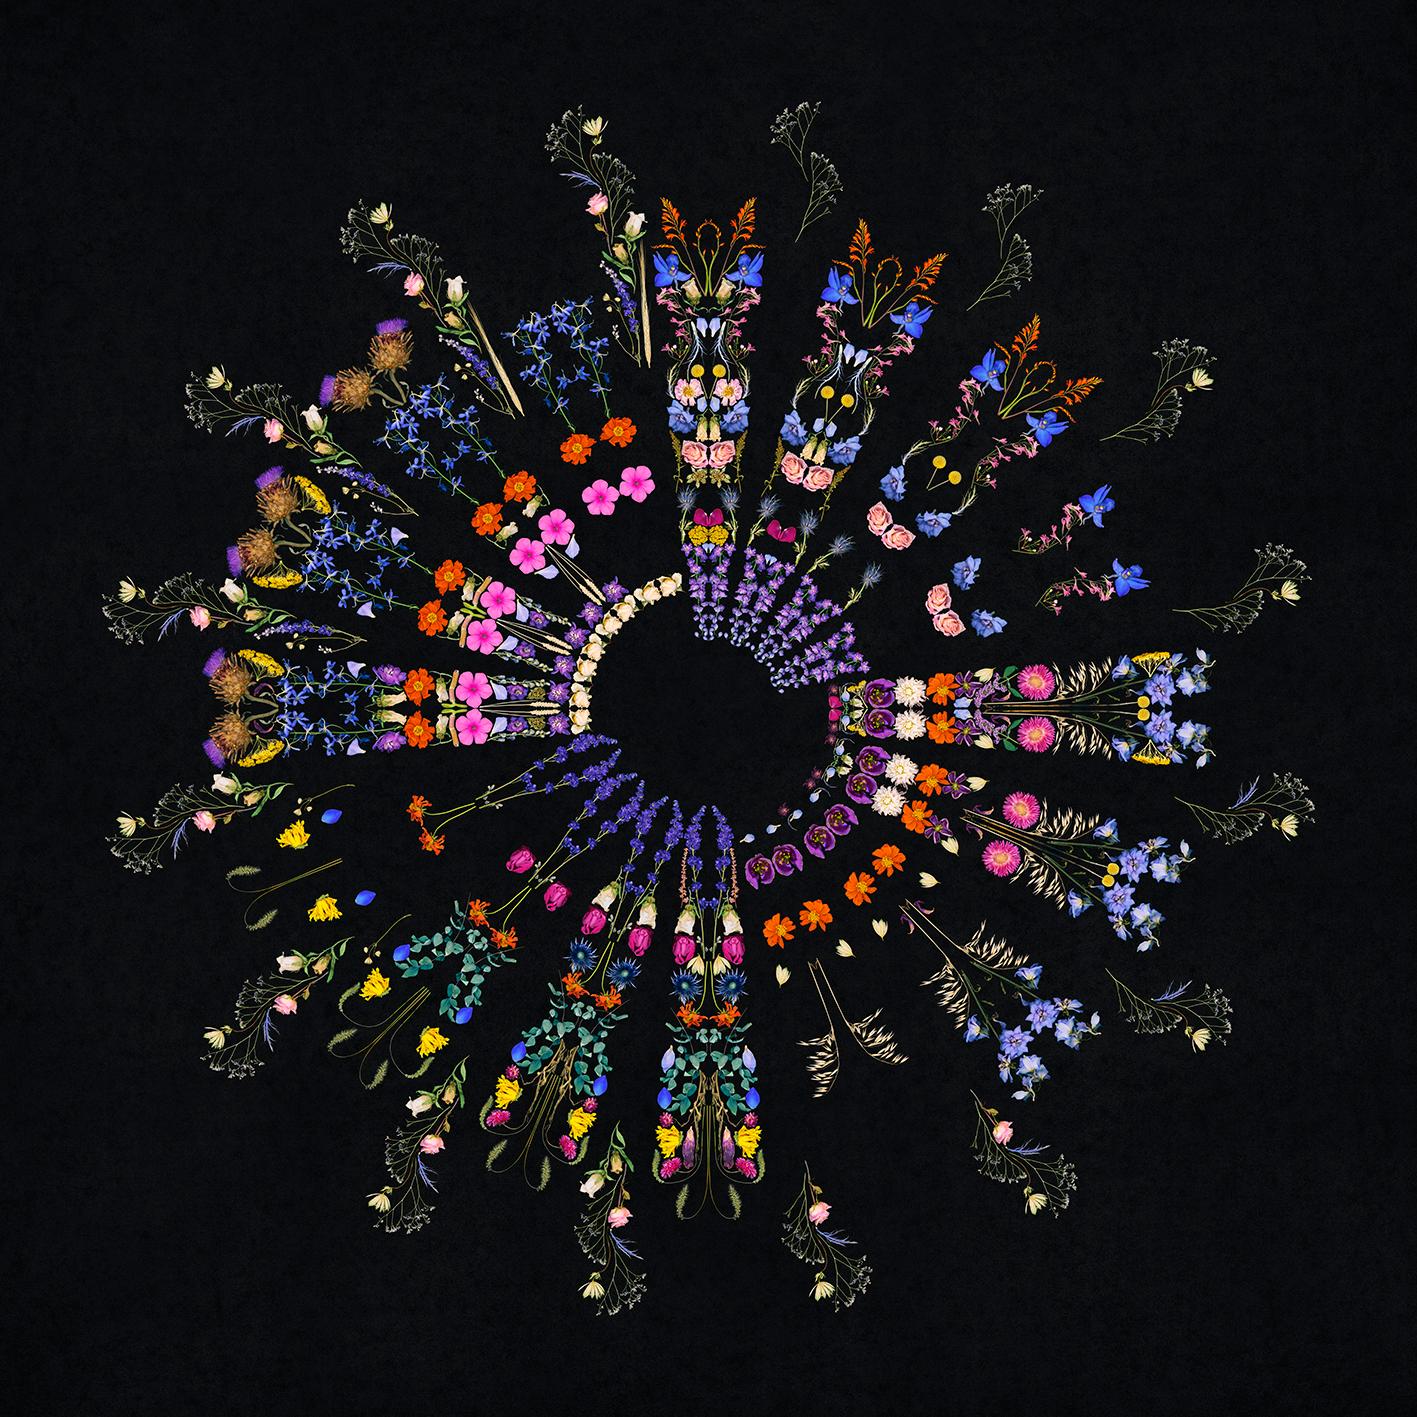 Color Photograph George McLeod - Florist Mandala - collage de fleurs mortes